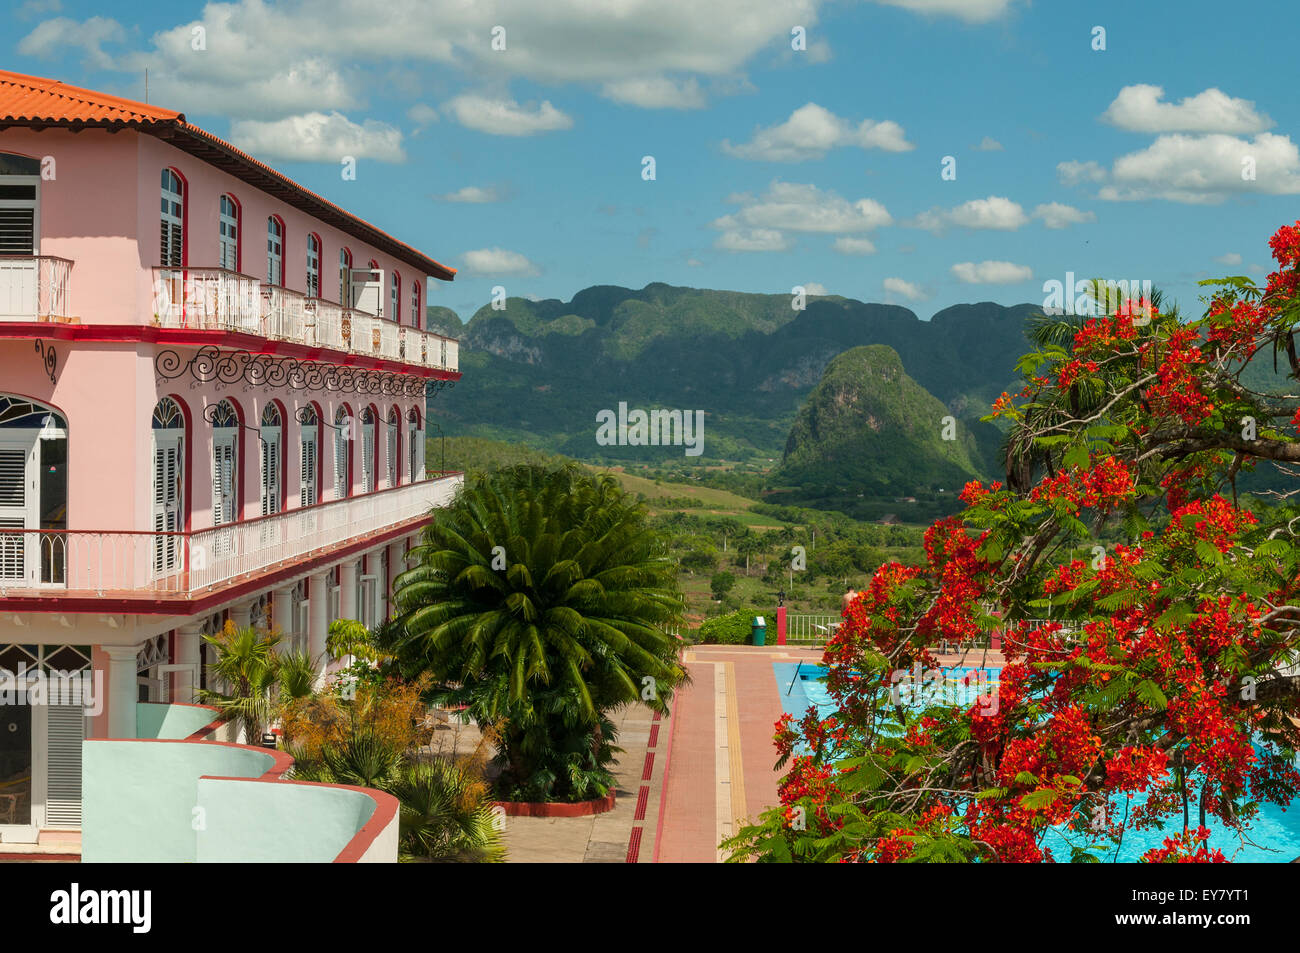 Hotel vinales cuba immagini e fotografie stock ad alta risoluzione - Alamy